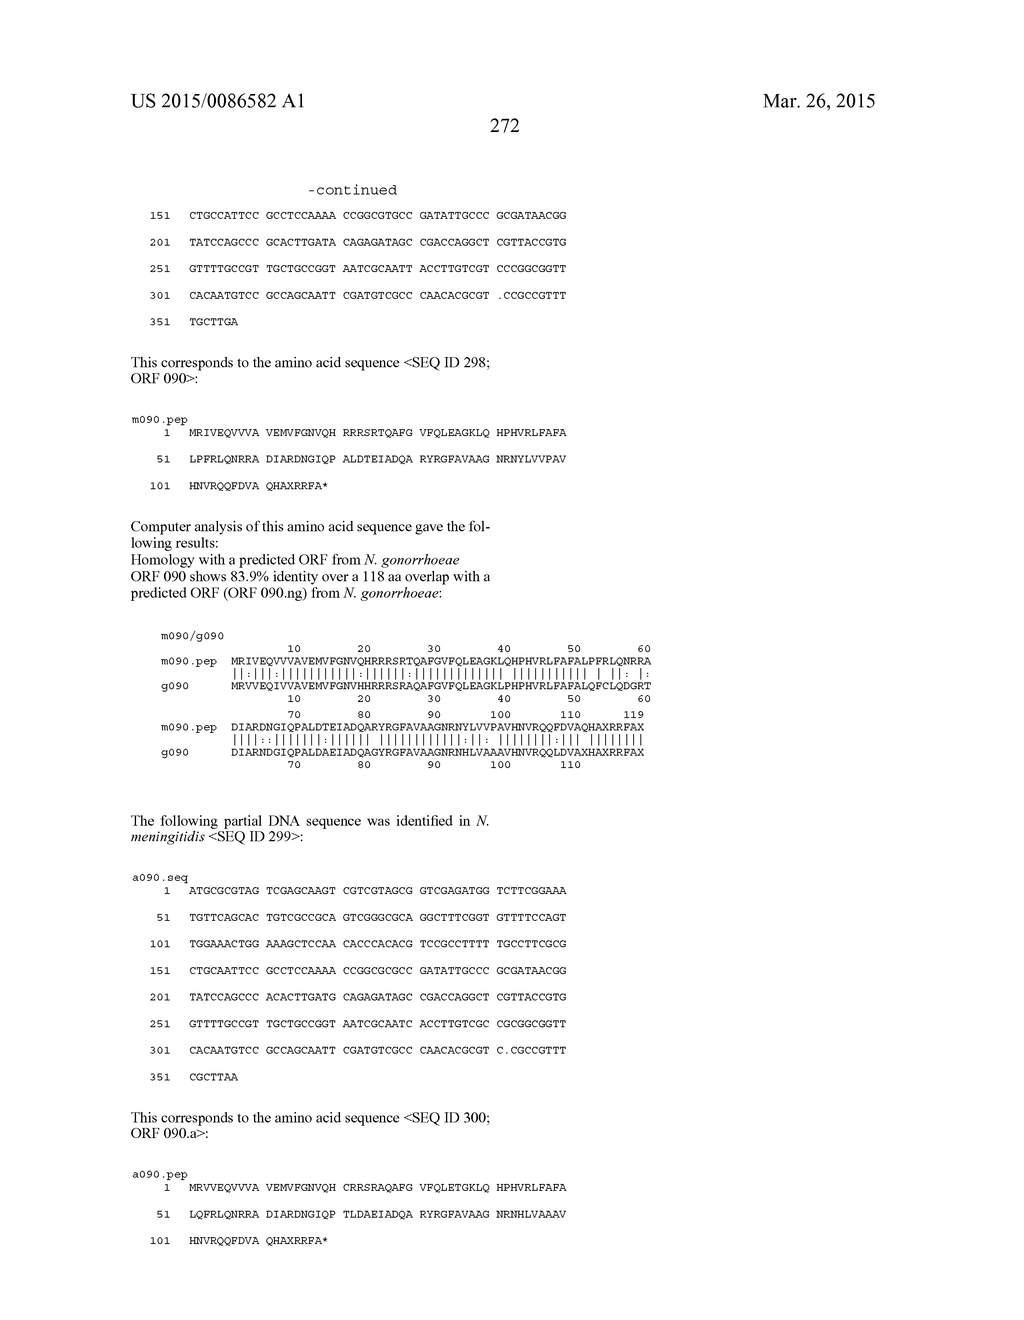 NEISSERIA MENINGITIDIS ANTIGENS AND COMPOSITIONS - diagram, schematic, and image 304